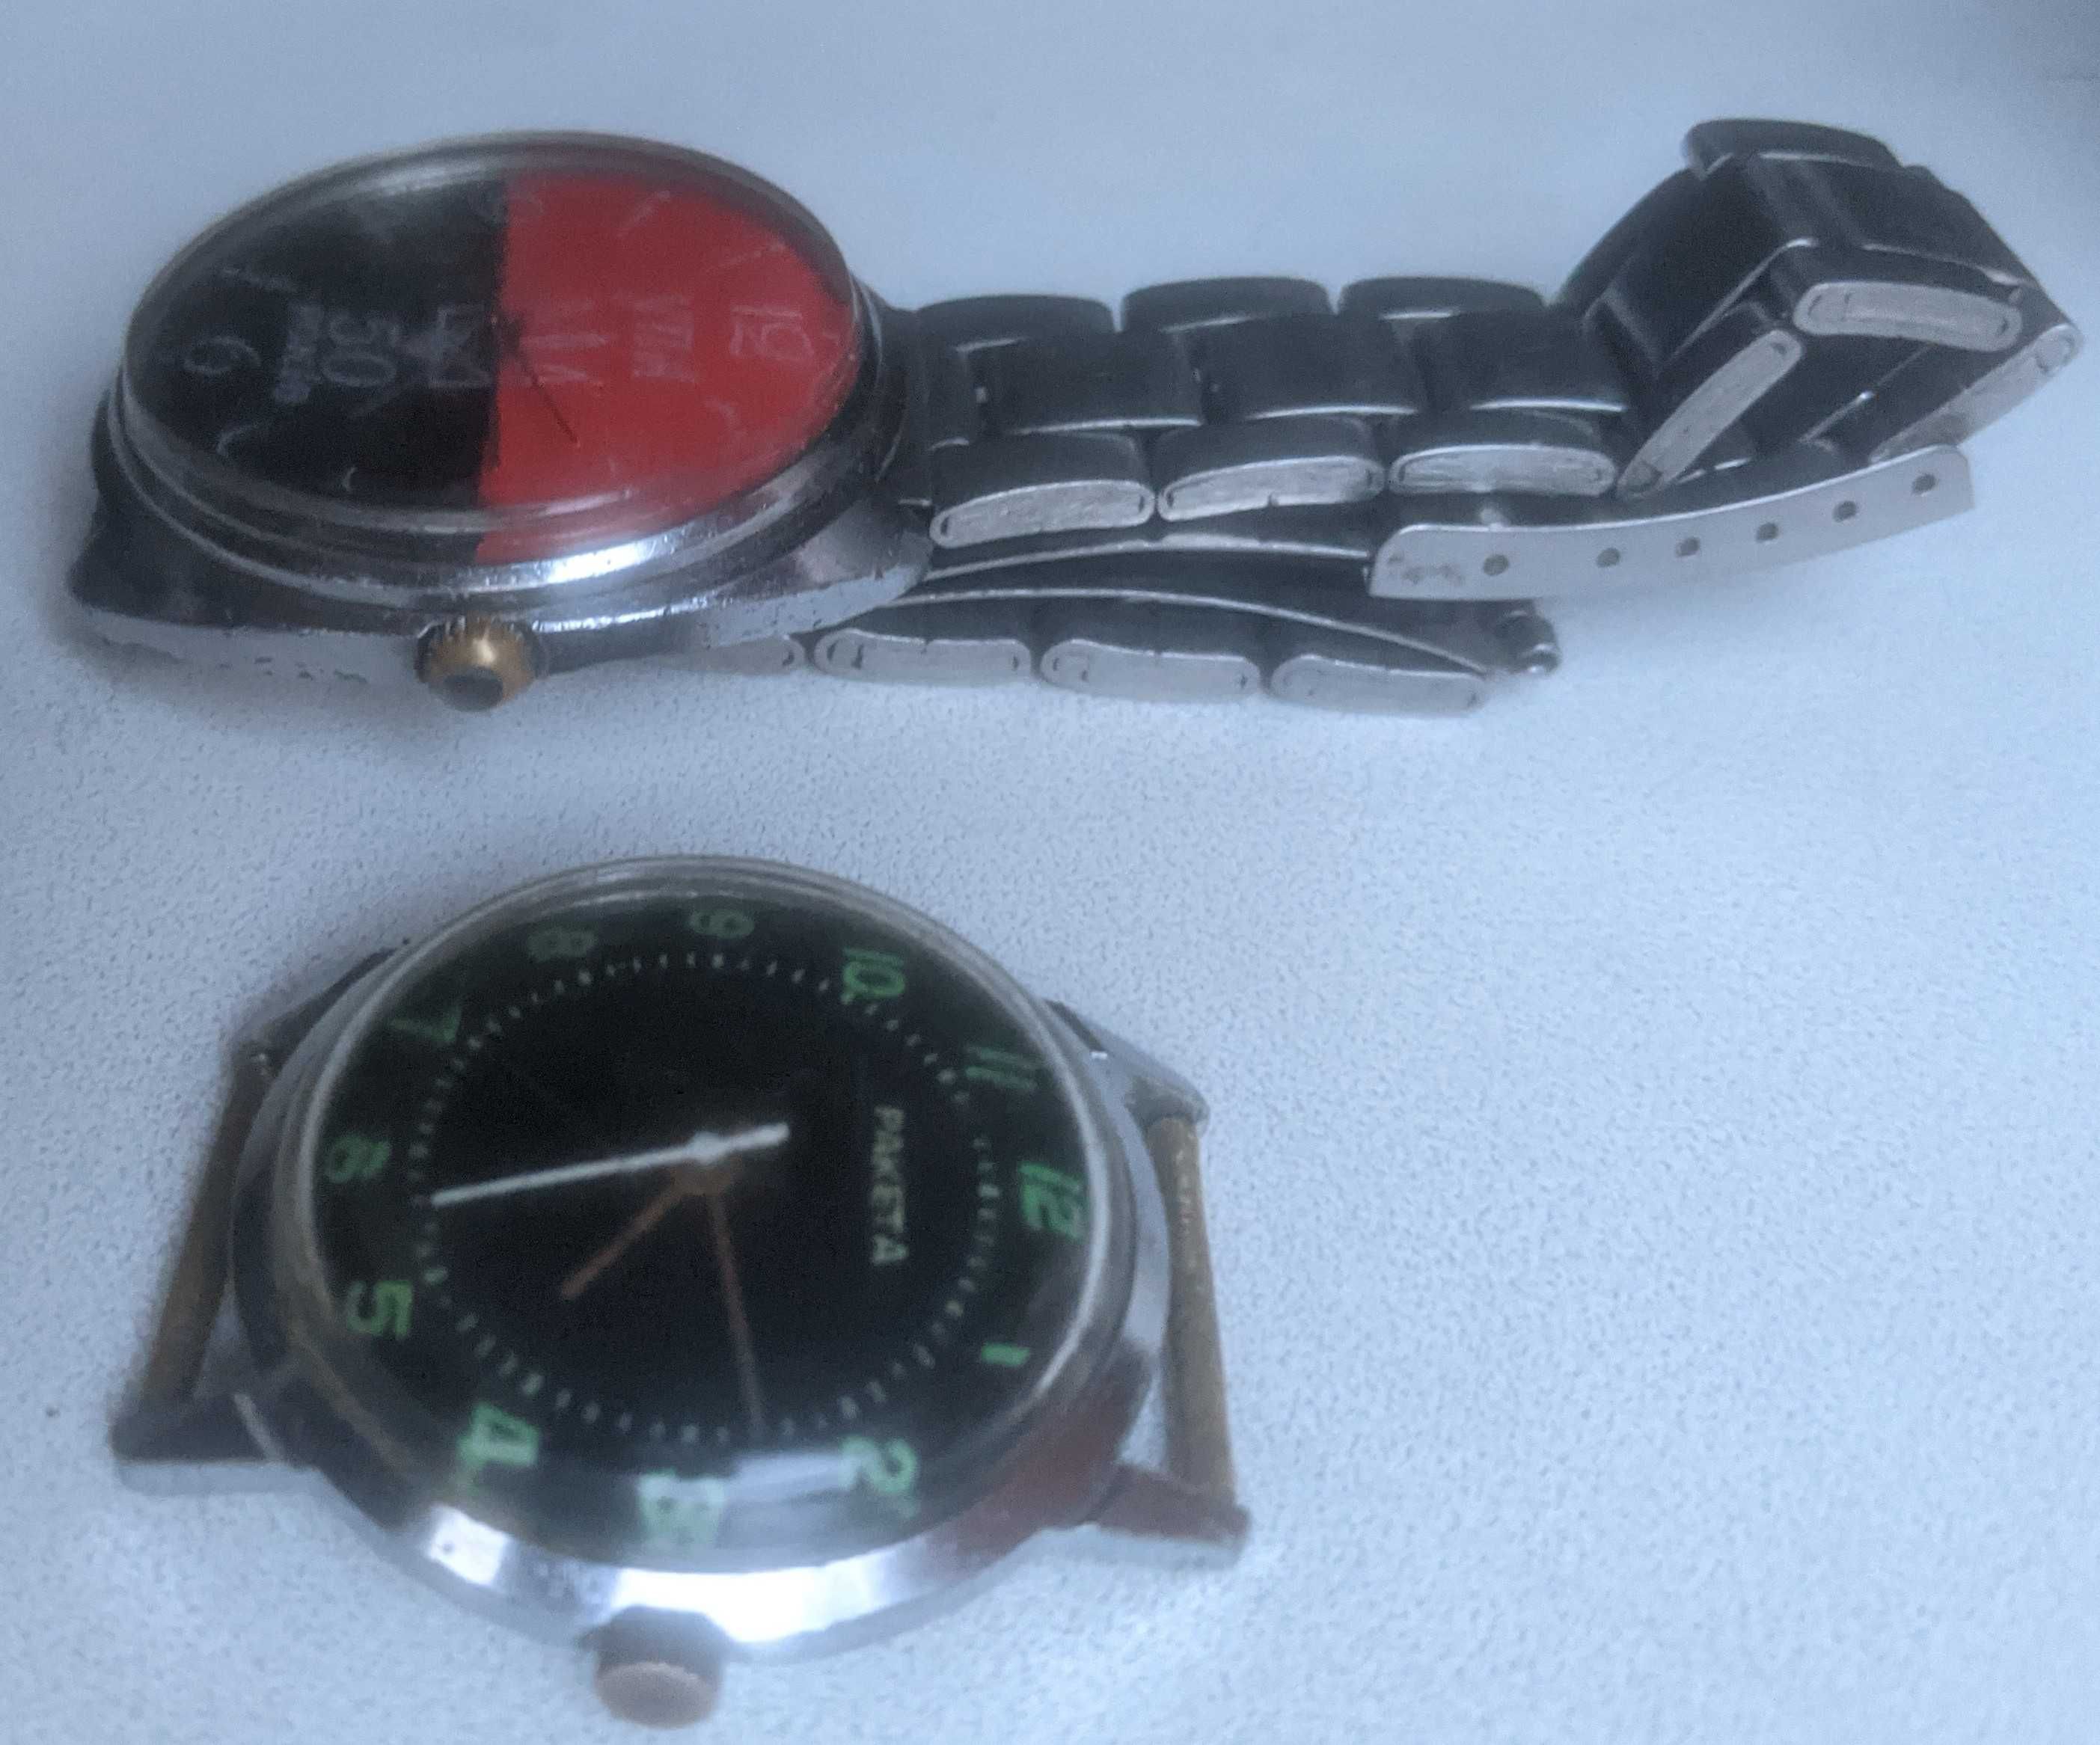 Чоловічі та жіночі механічні наручні годинники